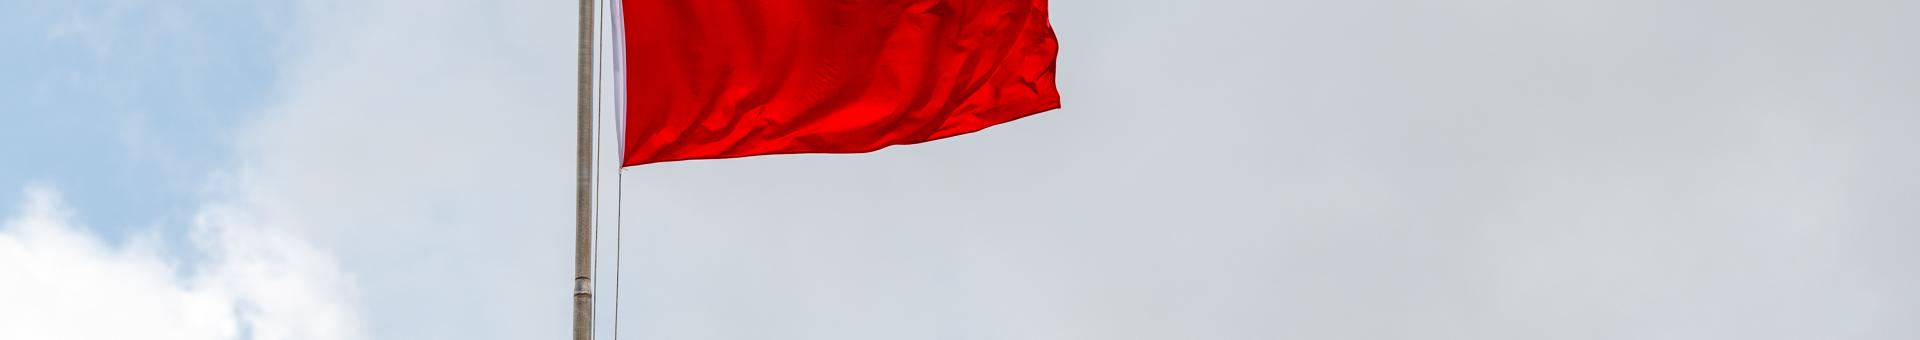 CHINE: POURQUOI LES FOUDRES DE PEKIN S'ABATTENT SUR ALIBABA? 